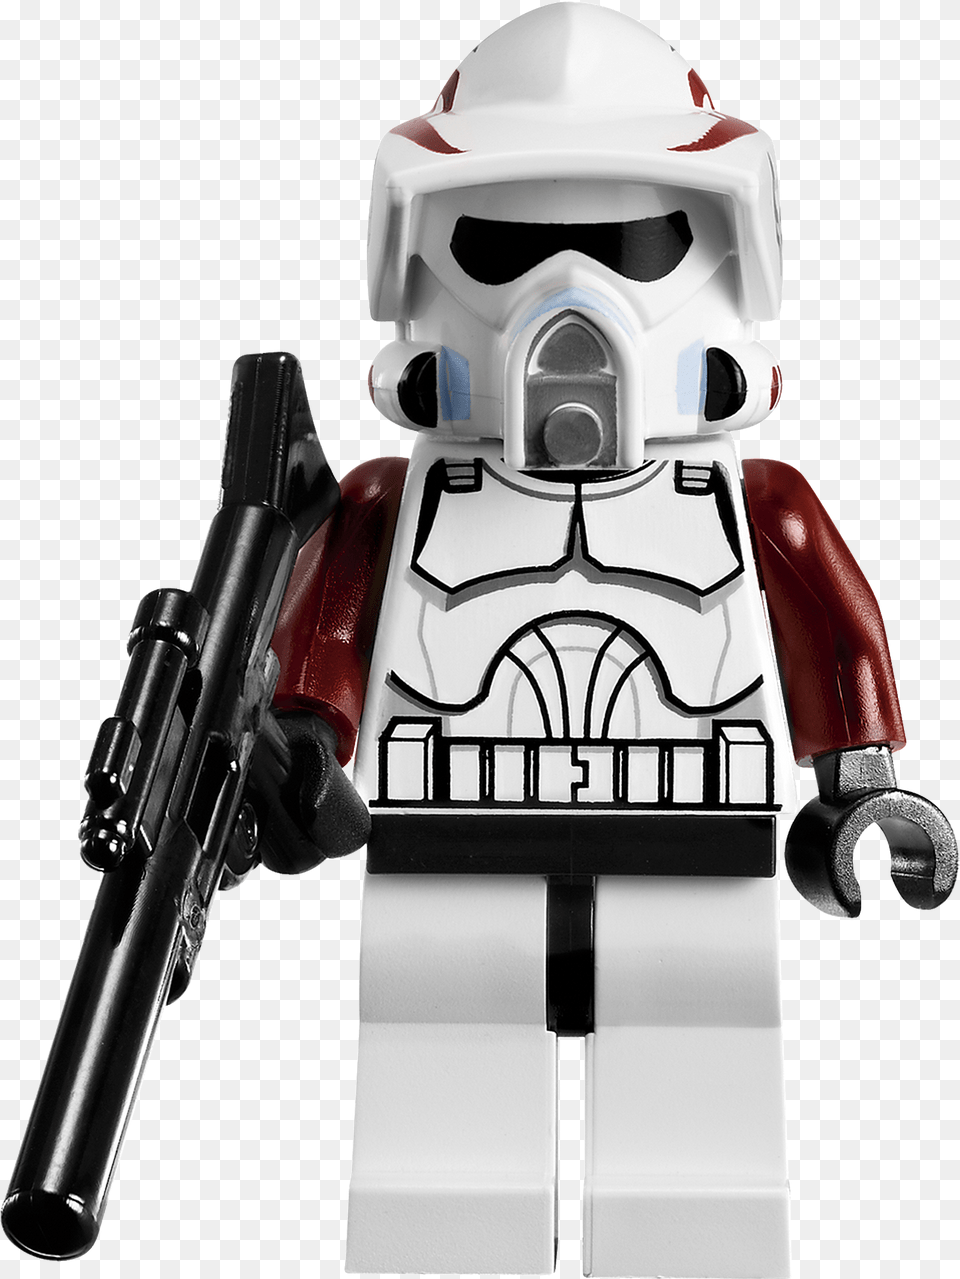 Elite Clone Trooper Amp Commando Droid Battle Pack Lego Star Wars Elite Clone Trooper And Commando Droid, Gun, Weapon, Helmet, Robot Free Png